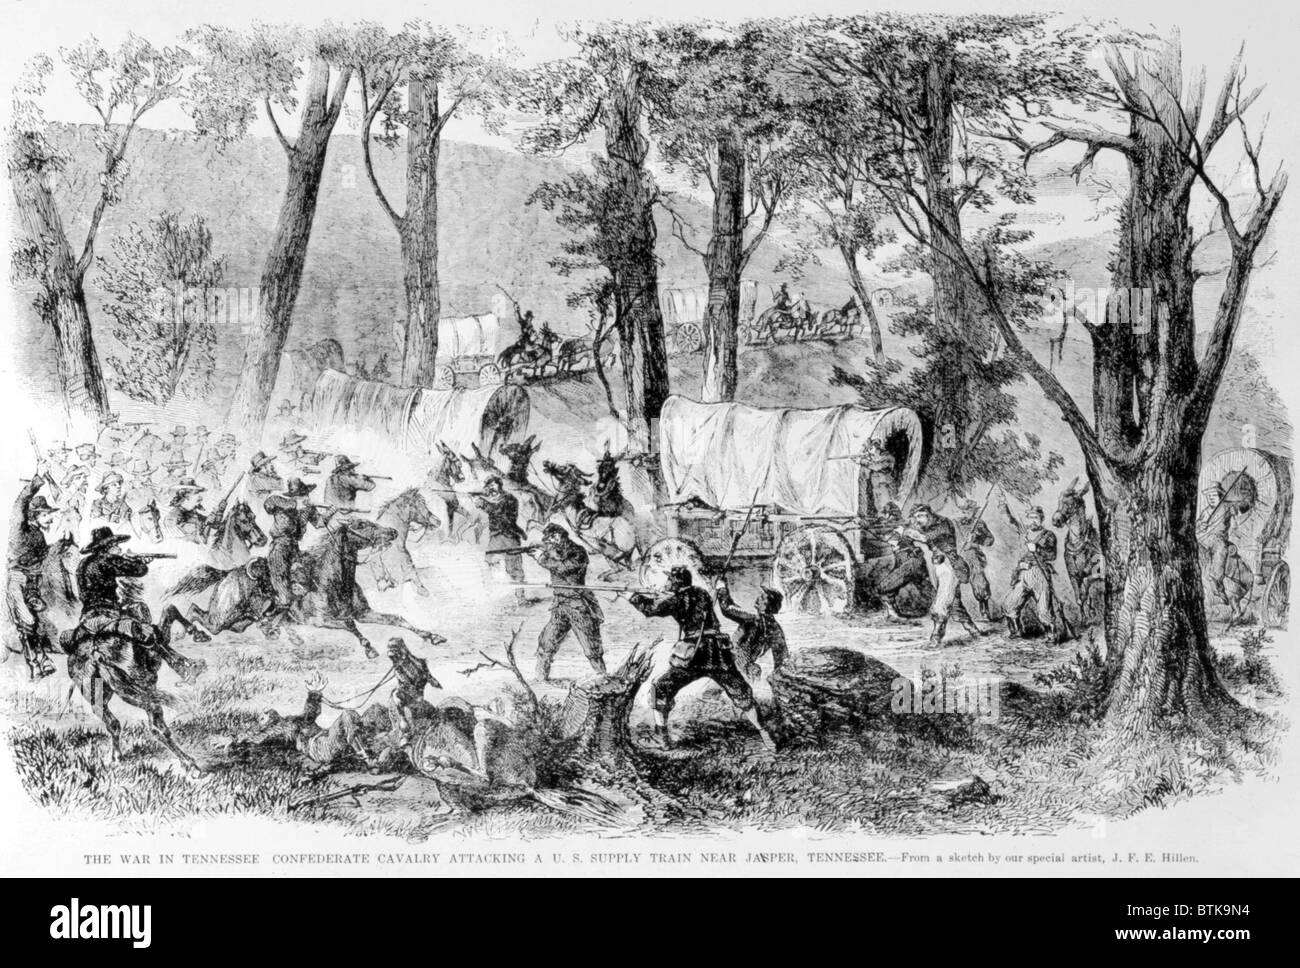 Confederate cavalry attackng a Union supply train near Jasper, Tennessee, 1863 Stock Photo